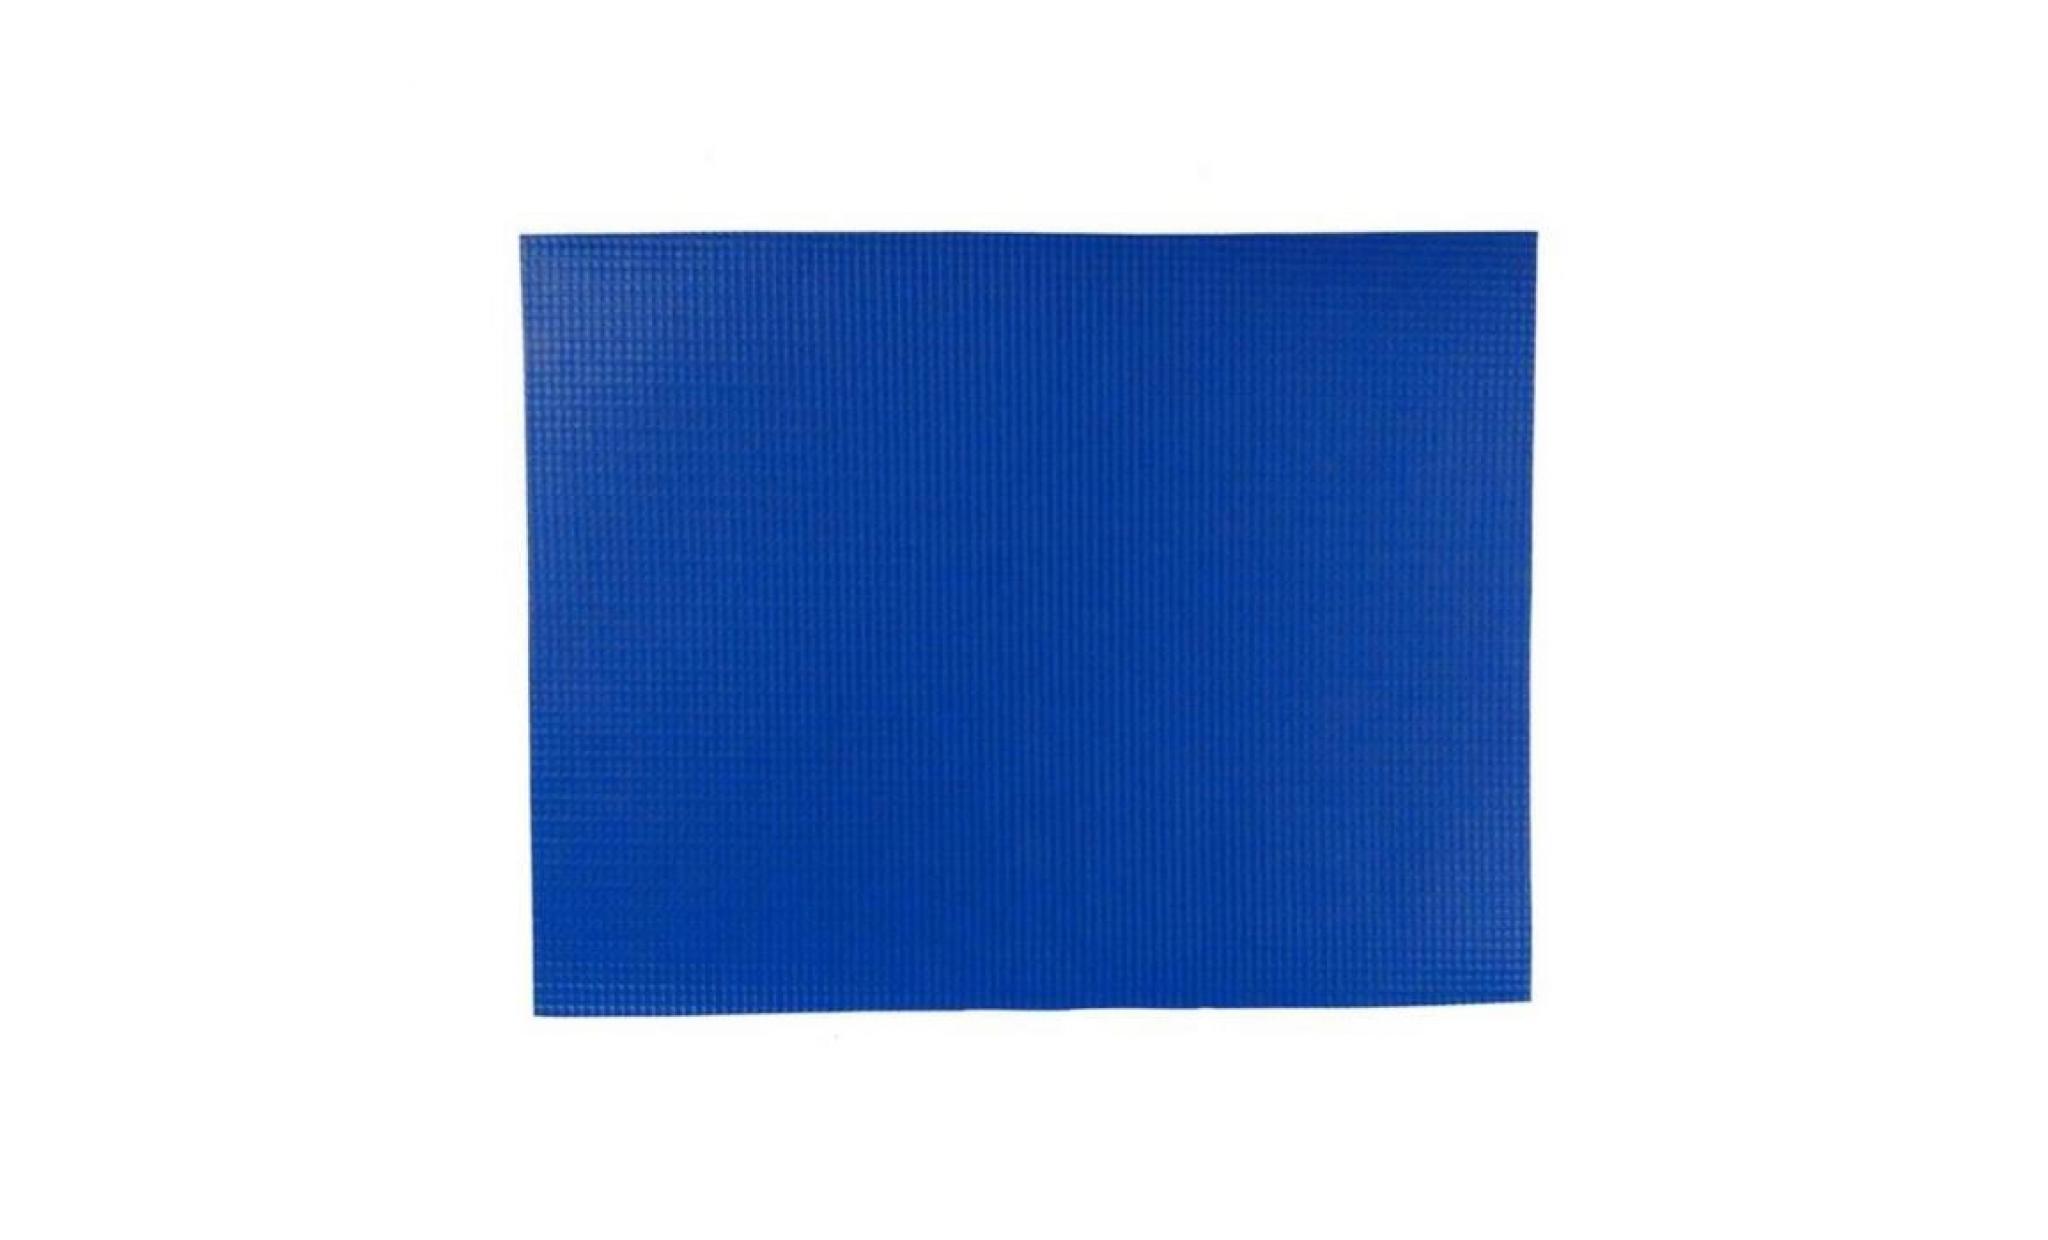 merlin mlnpatsbl 21,59 cm x 27,94 cm couverture de sécurité solid patch   bleu